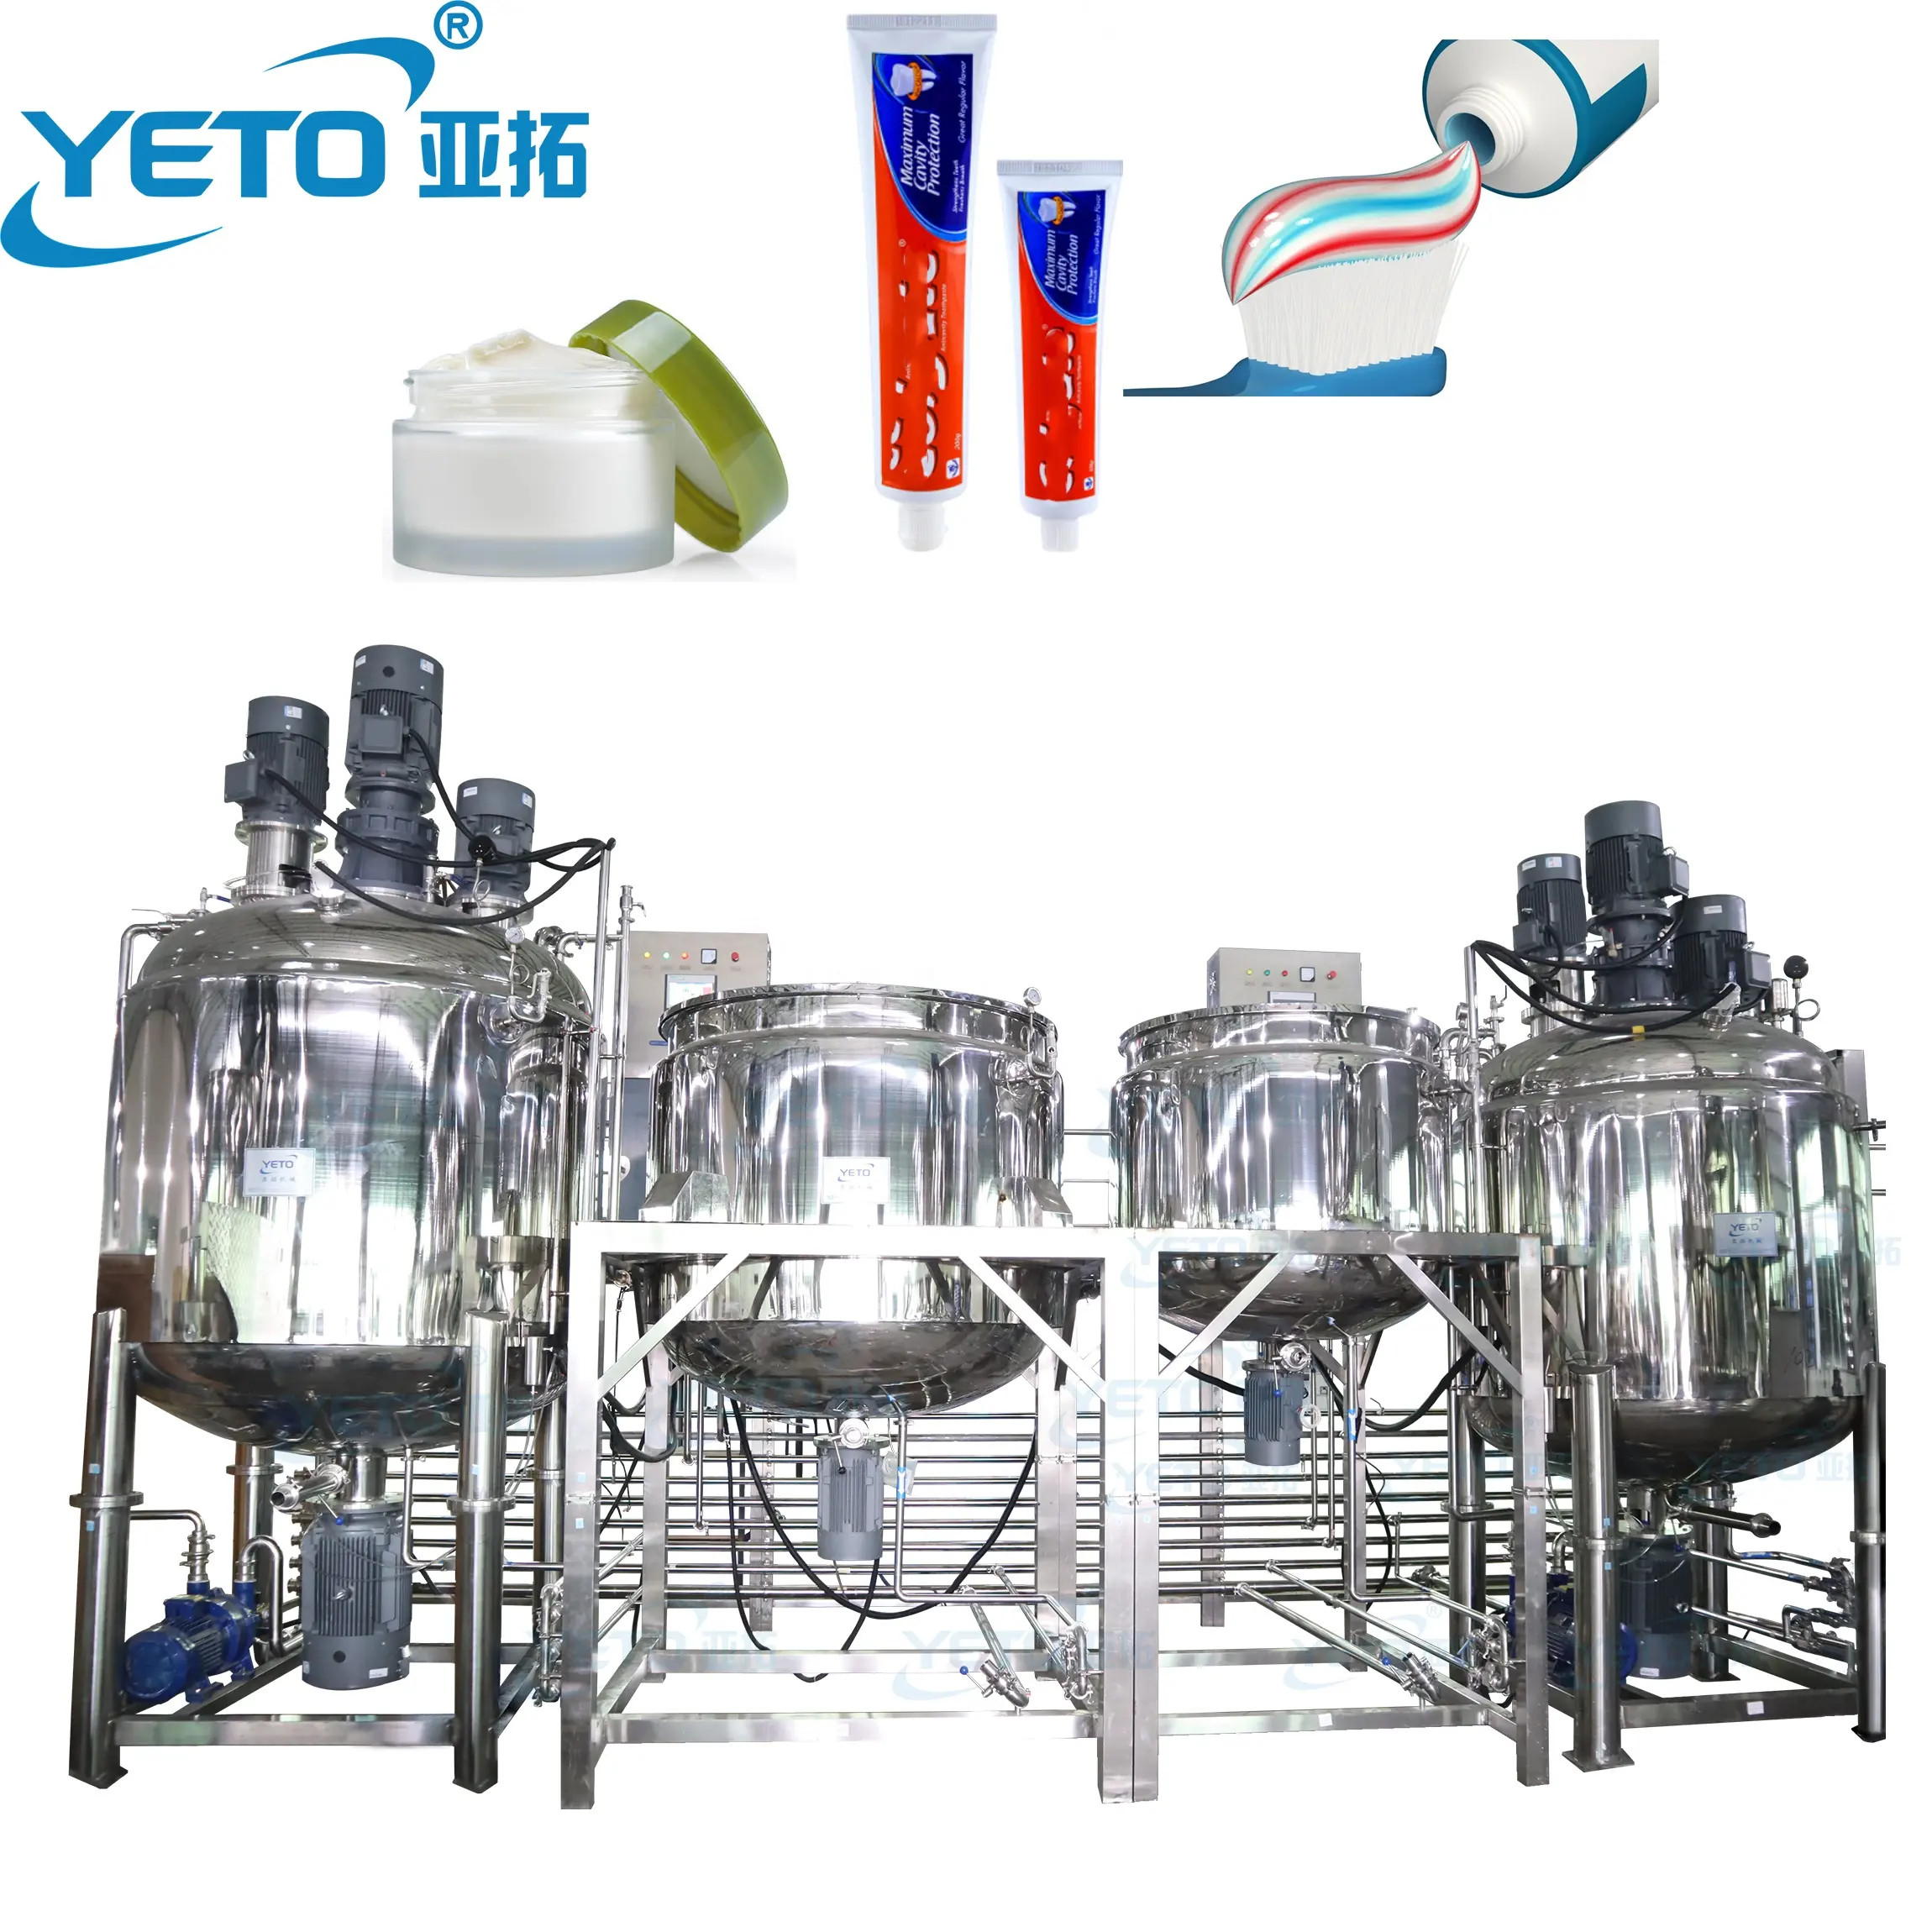 YETO автоматическая машина для производства зубной пасты, вакуумный эмульгирующий миксер, косметический крем, лосьон, гомогенизатор, эмульгатор